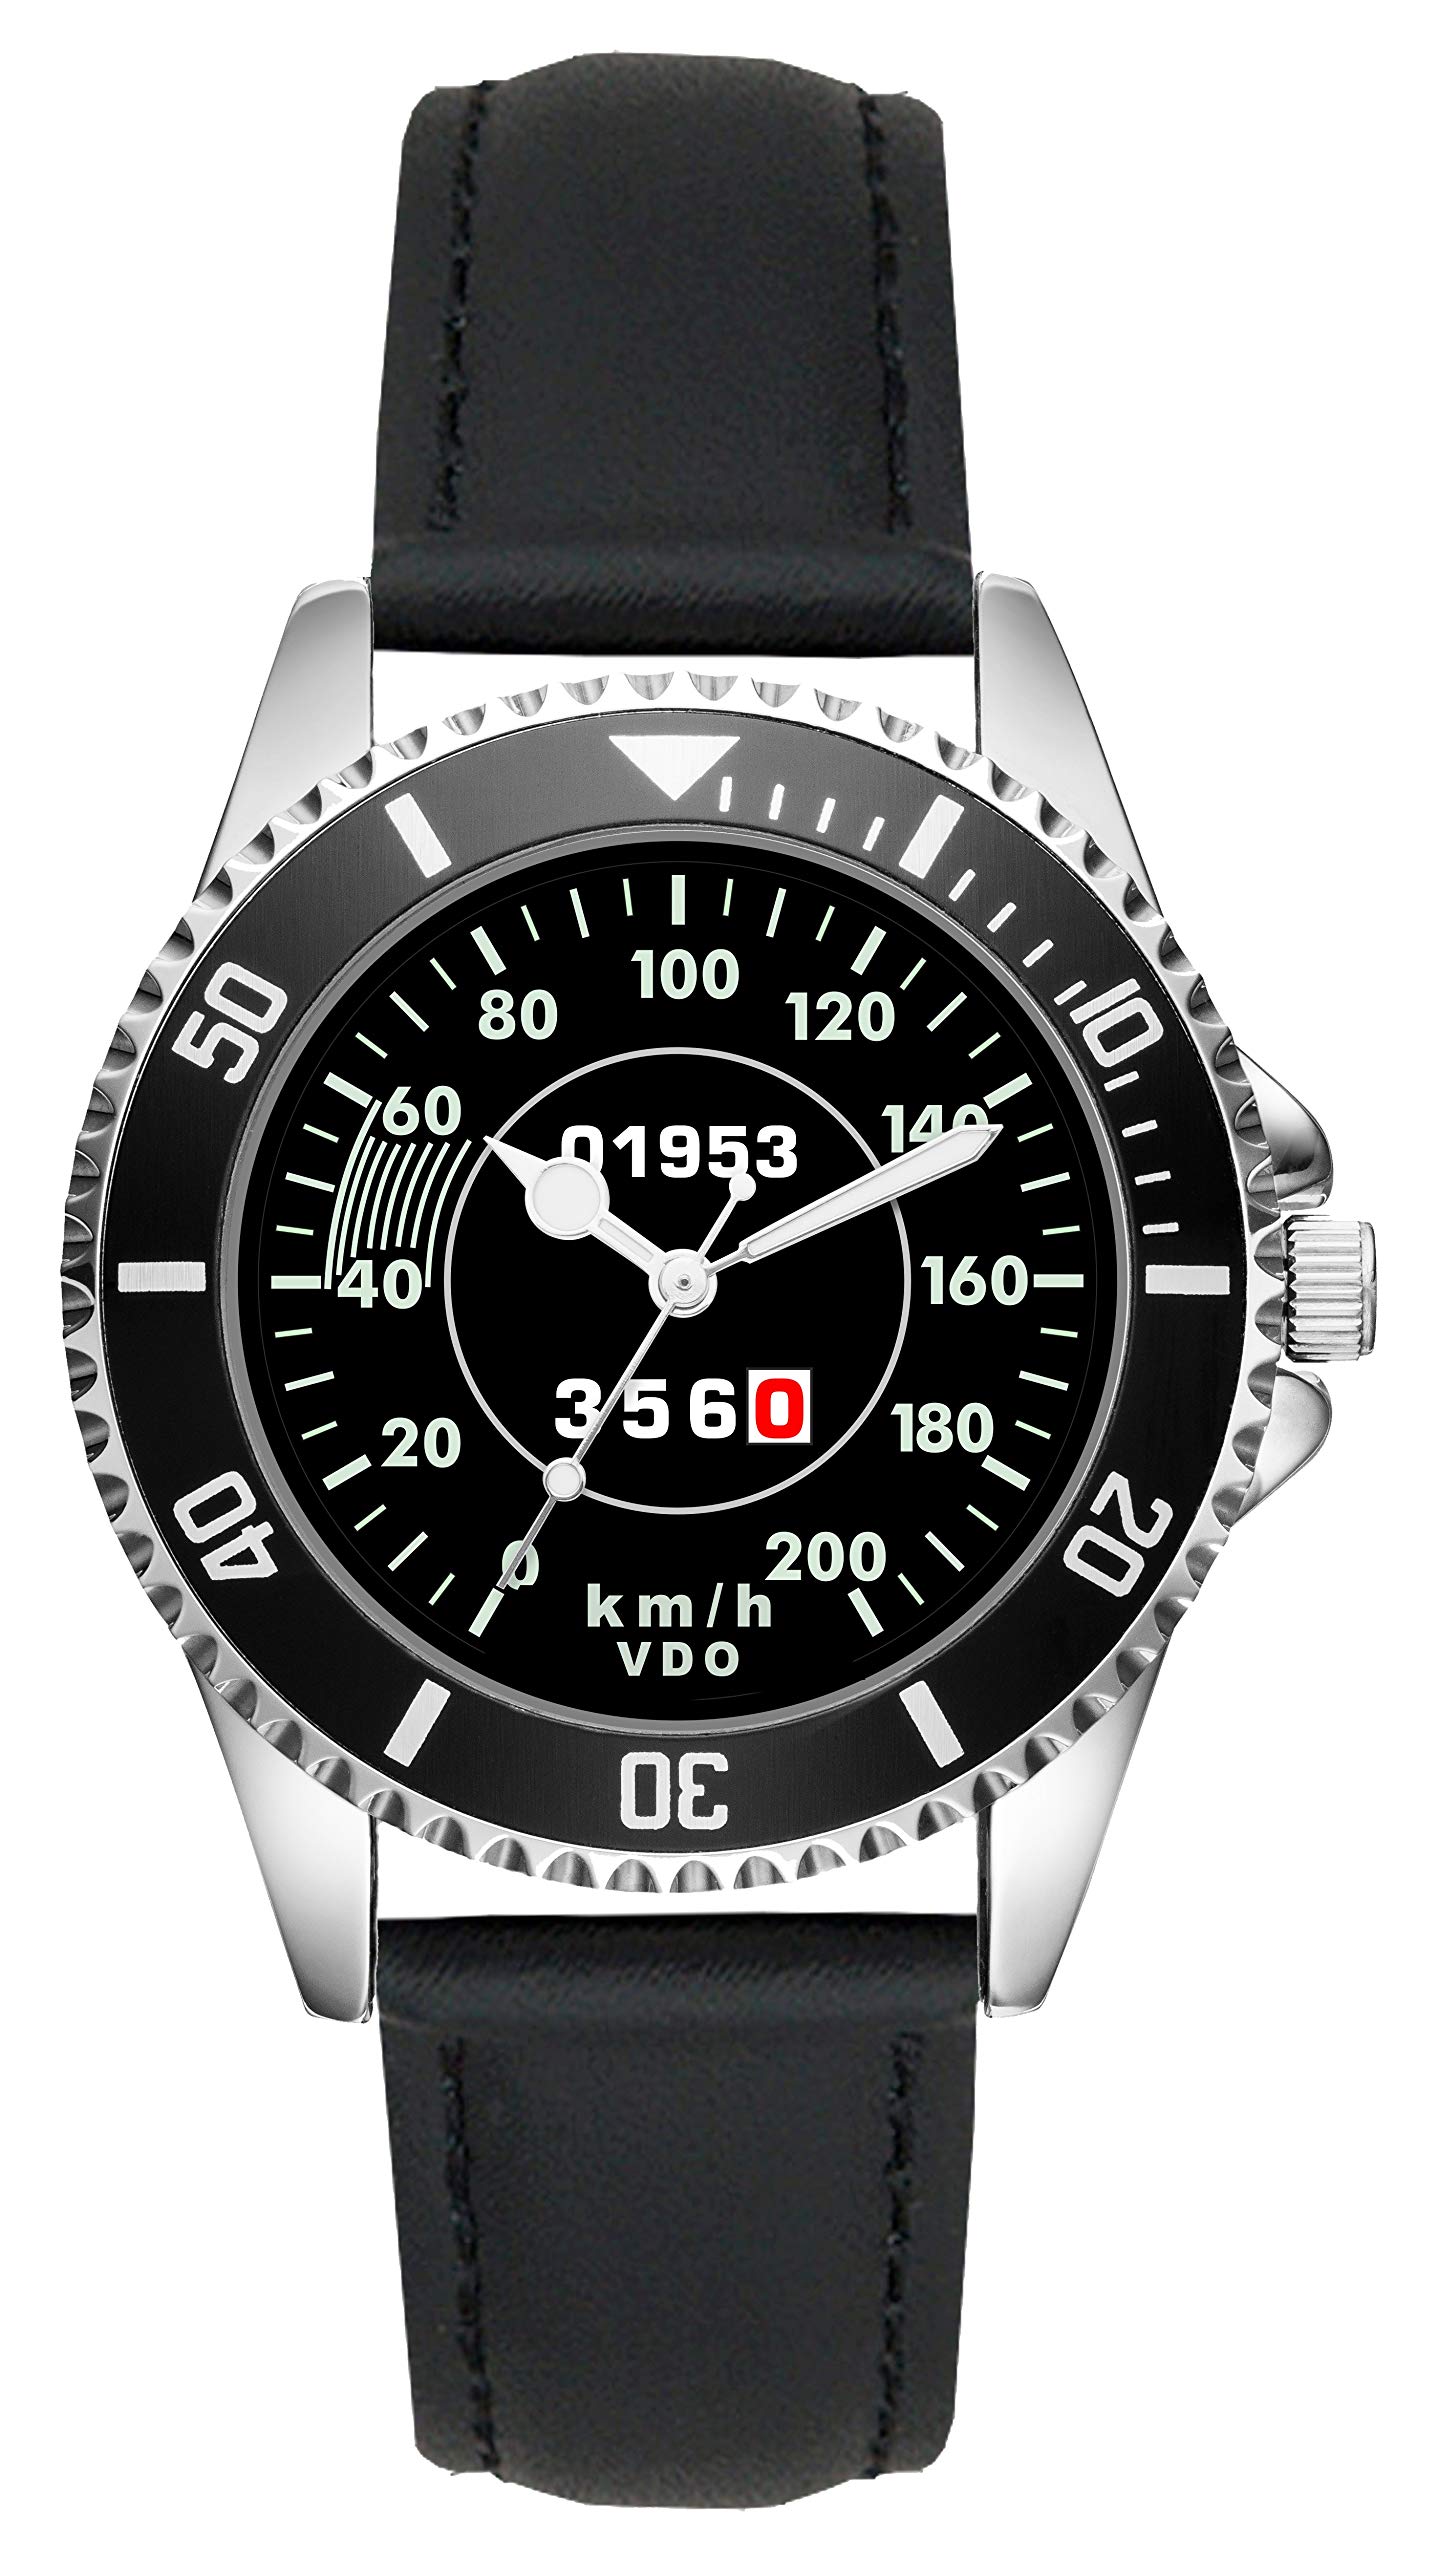 KIESENBERG Men's Watch Gift for Porsche 356 Fans Cockpit Speedo Quartz Analog Wrist Watch L-20620